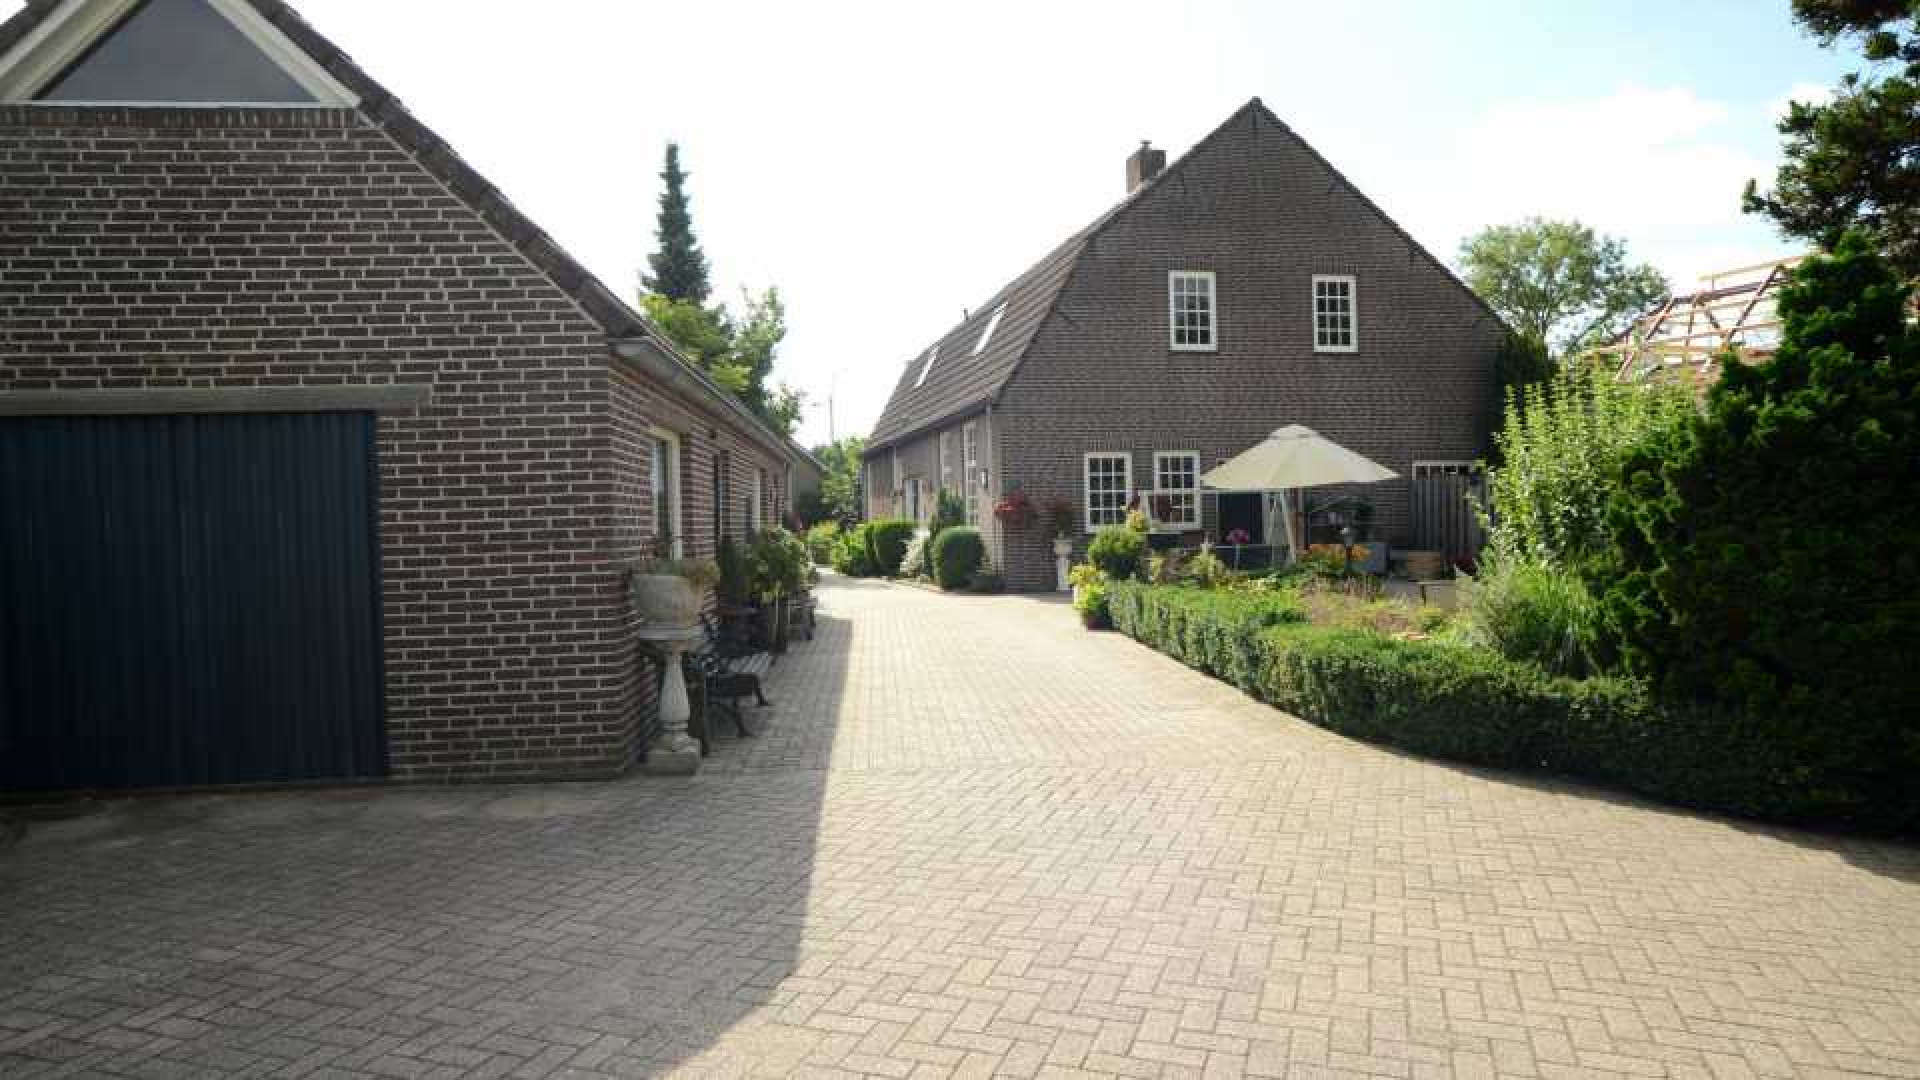 Michael van Gerwen huurt luxe woonboerderij. Zie foto's 17